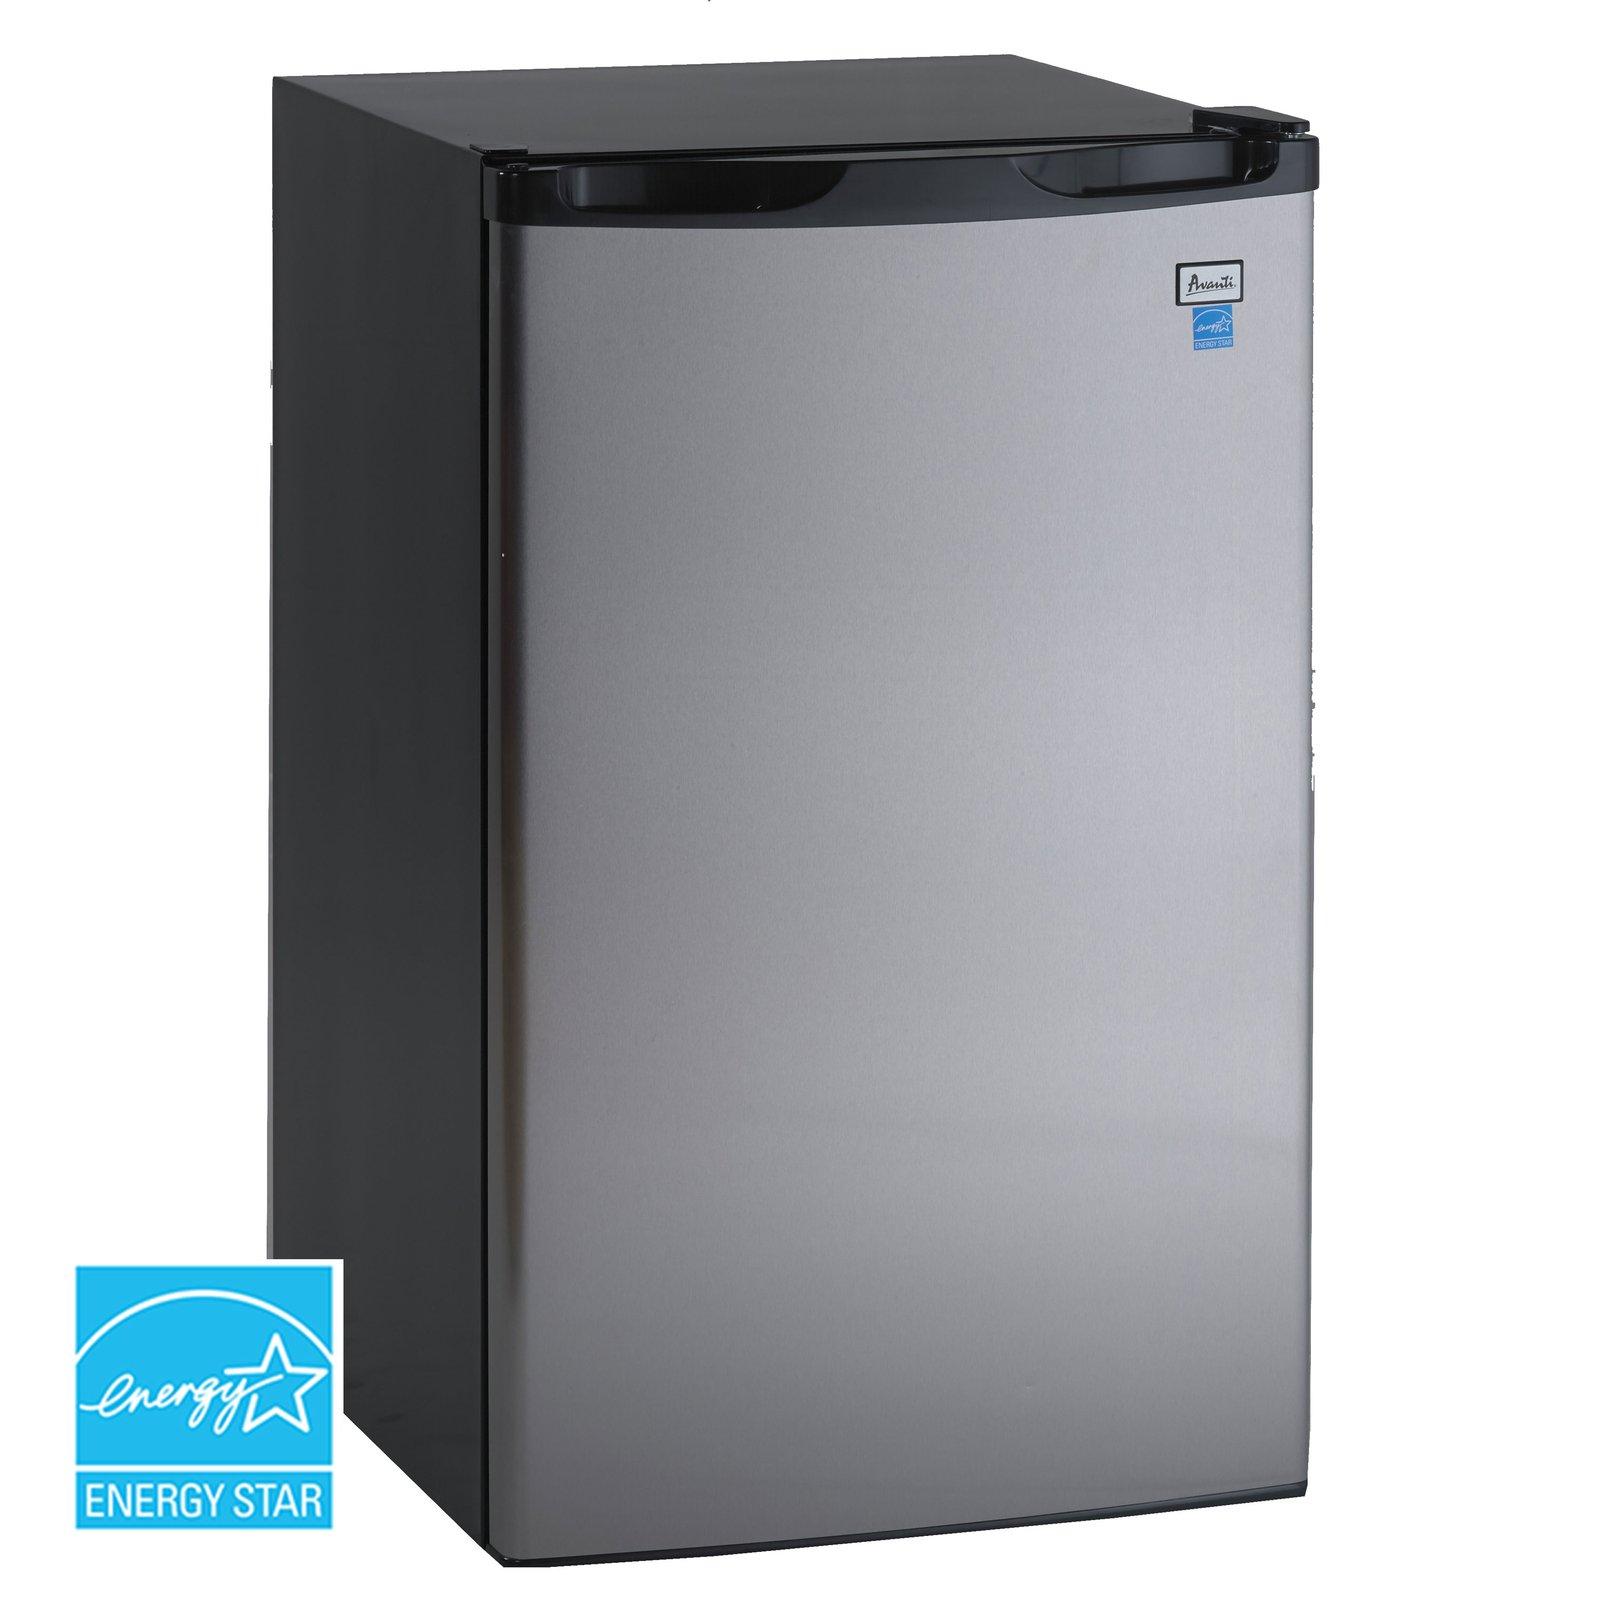 Avanti 4.4 cu. ft. Compact Refrigerator - White / 4.4 cu. ft.